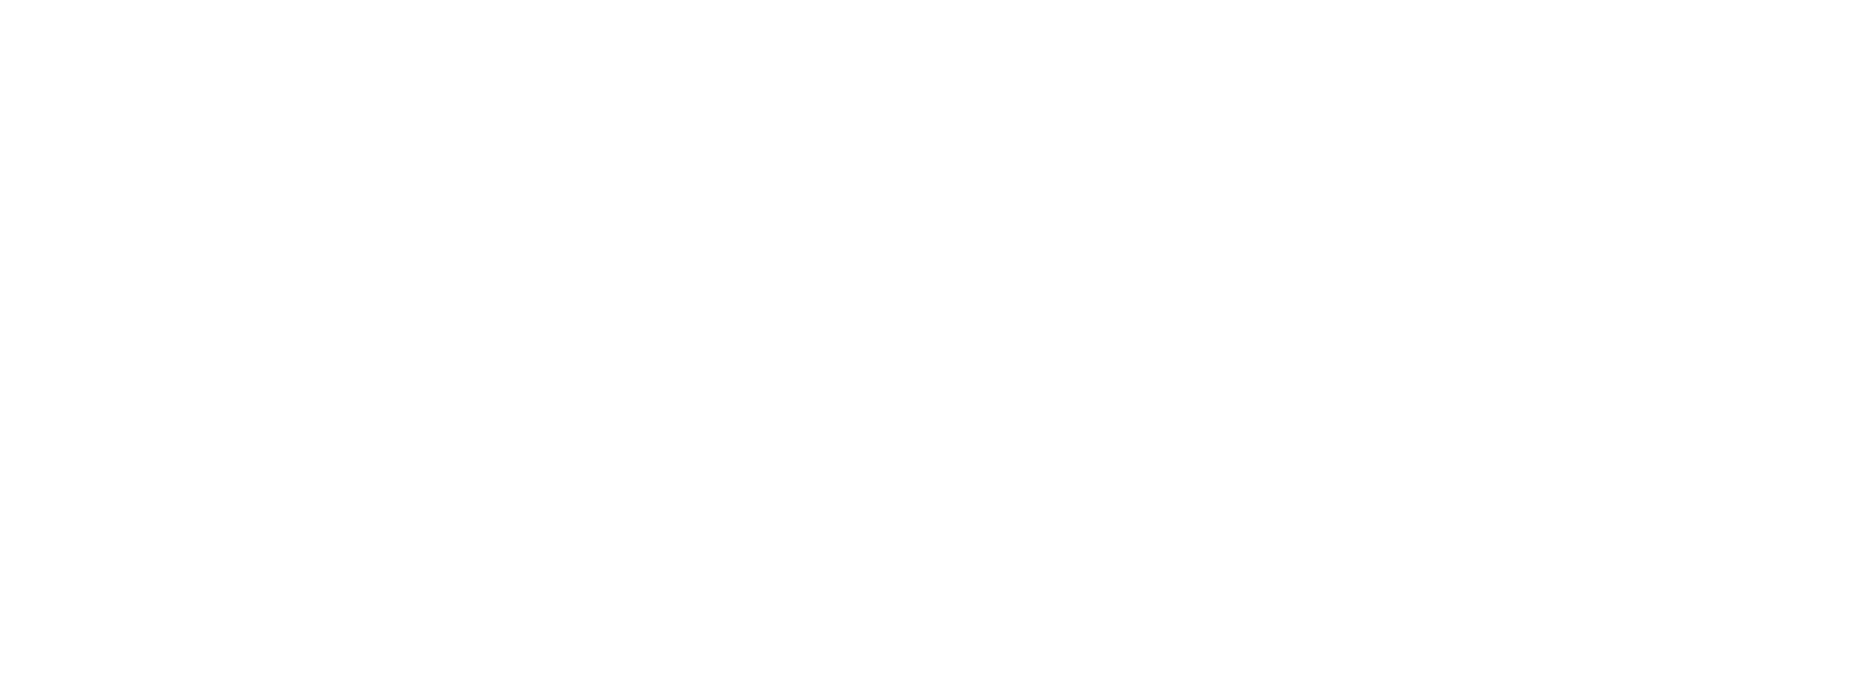 Posia Retreat & SPA | UNA Esperienze